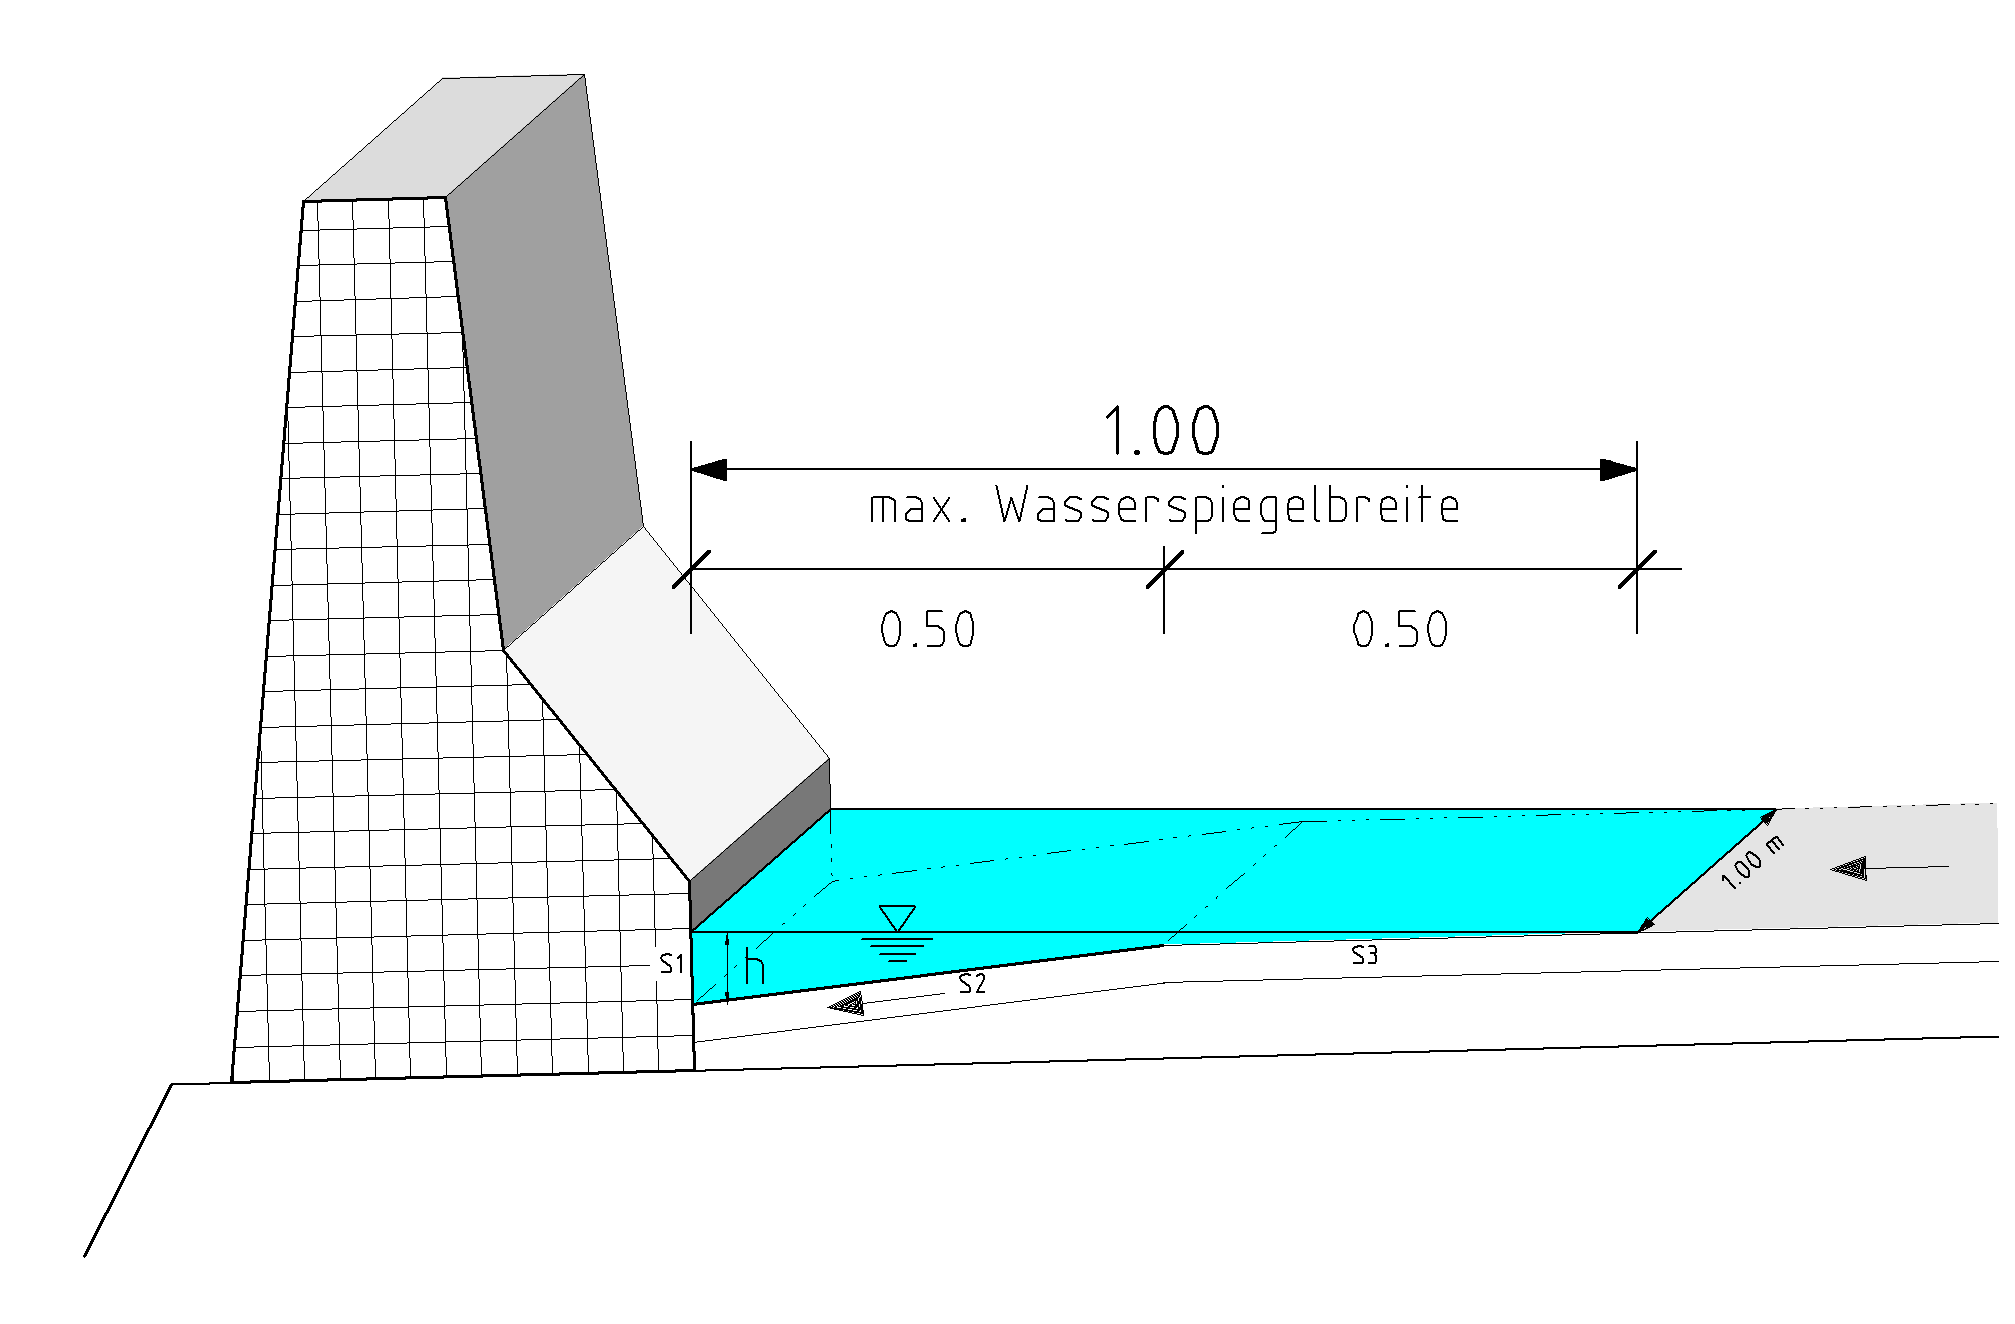 Bordrinne am Mittelstreifen: Laut Richtlinie darf die Wasserspiegelbreite der Bordrinne maximal 1,0 m betragen.